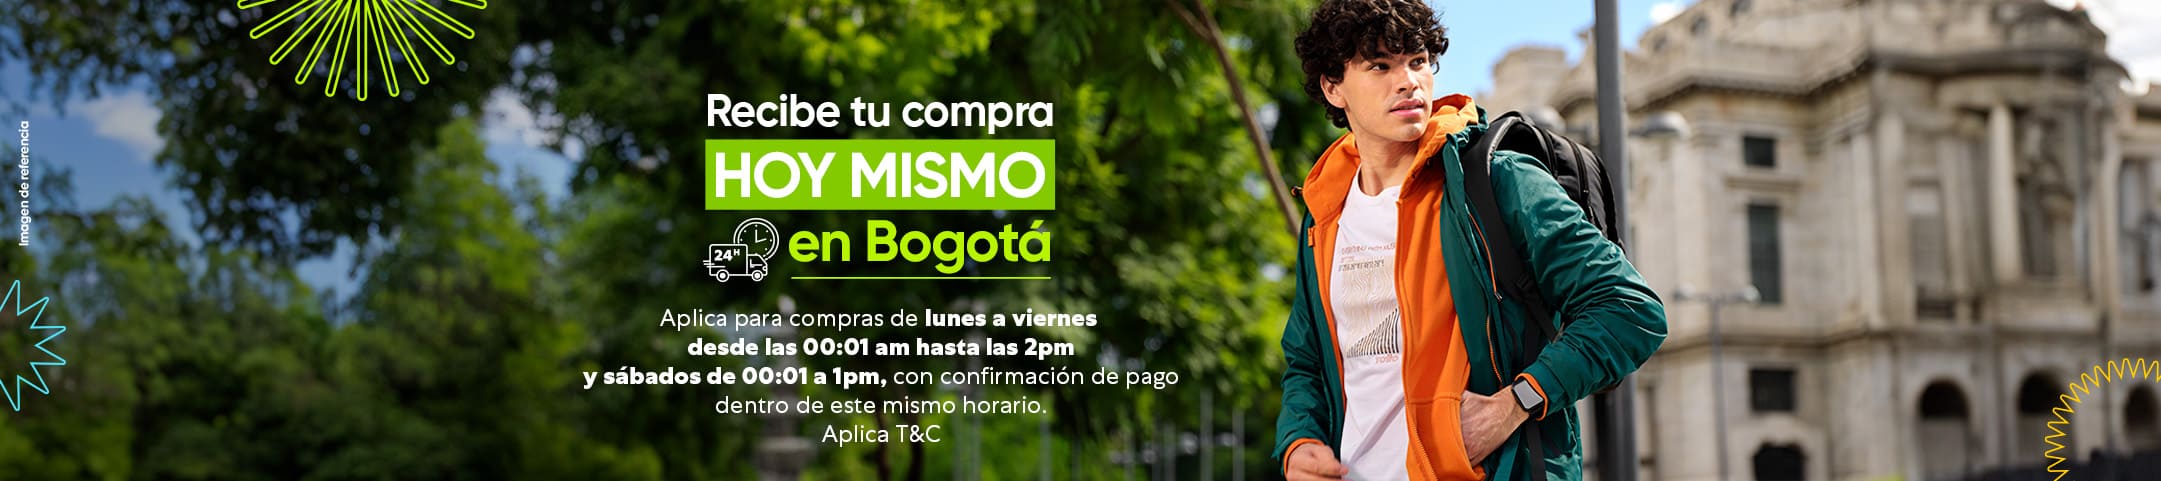 Disfruta tu compra con entrega hoy mismo, aquí más de 500 opciones para ti  Recibe tu compra el mismo día en Bogotá  Aplica para compras en el siguiente horario de lunes a viernes desde las 00:01 a.m. hasta las 2:00 p.m. y los sábados de 00:01 a 1:00 p.m., con confirmación de pago dentro de este mismo horario. No aplica para compras domingos o festivos.